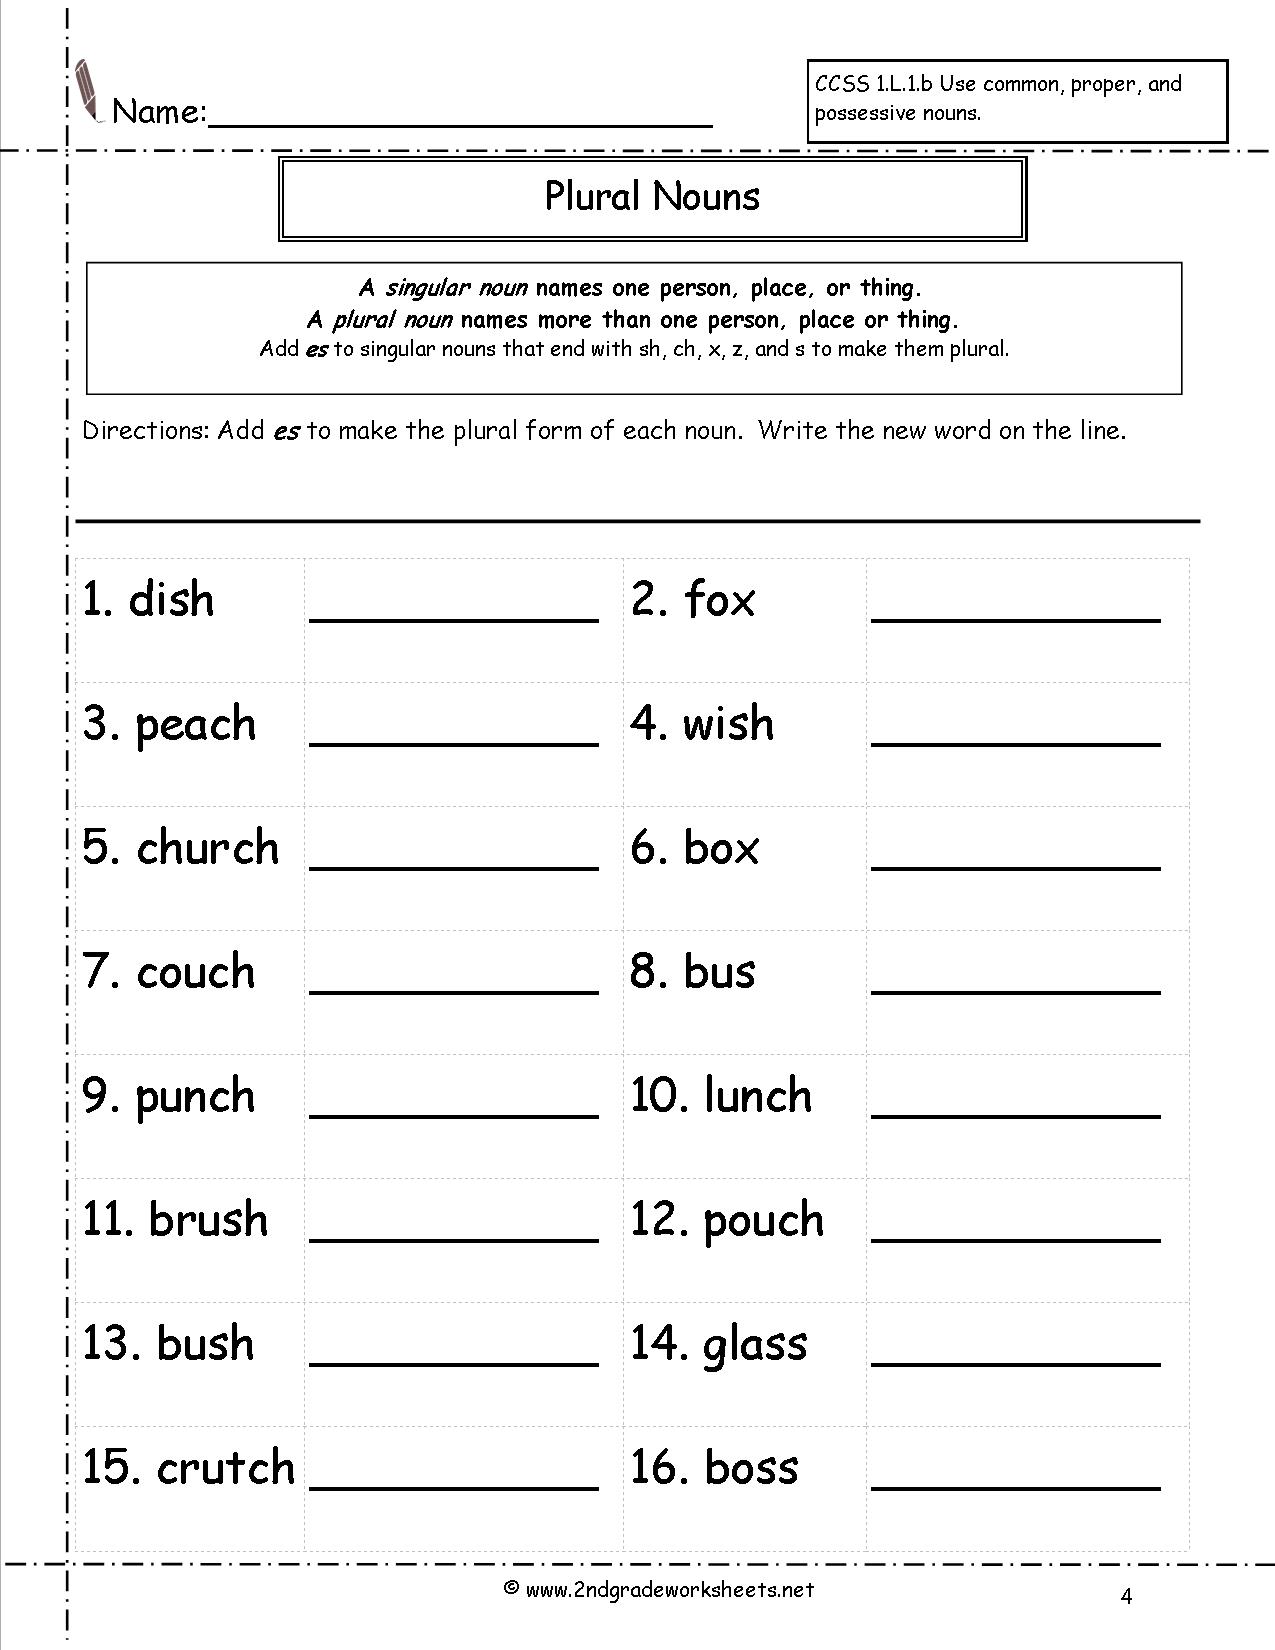 11-best-images-of-2nd-grade-making-change-worksheets-2nd-grade-math